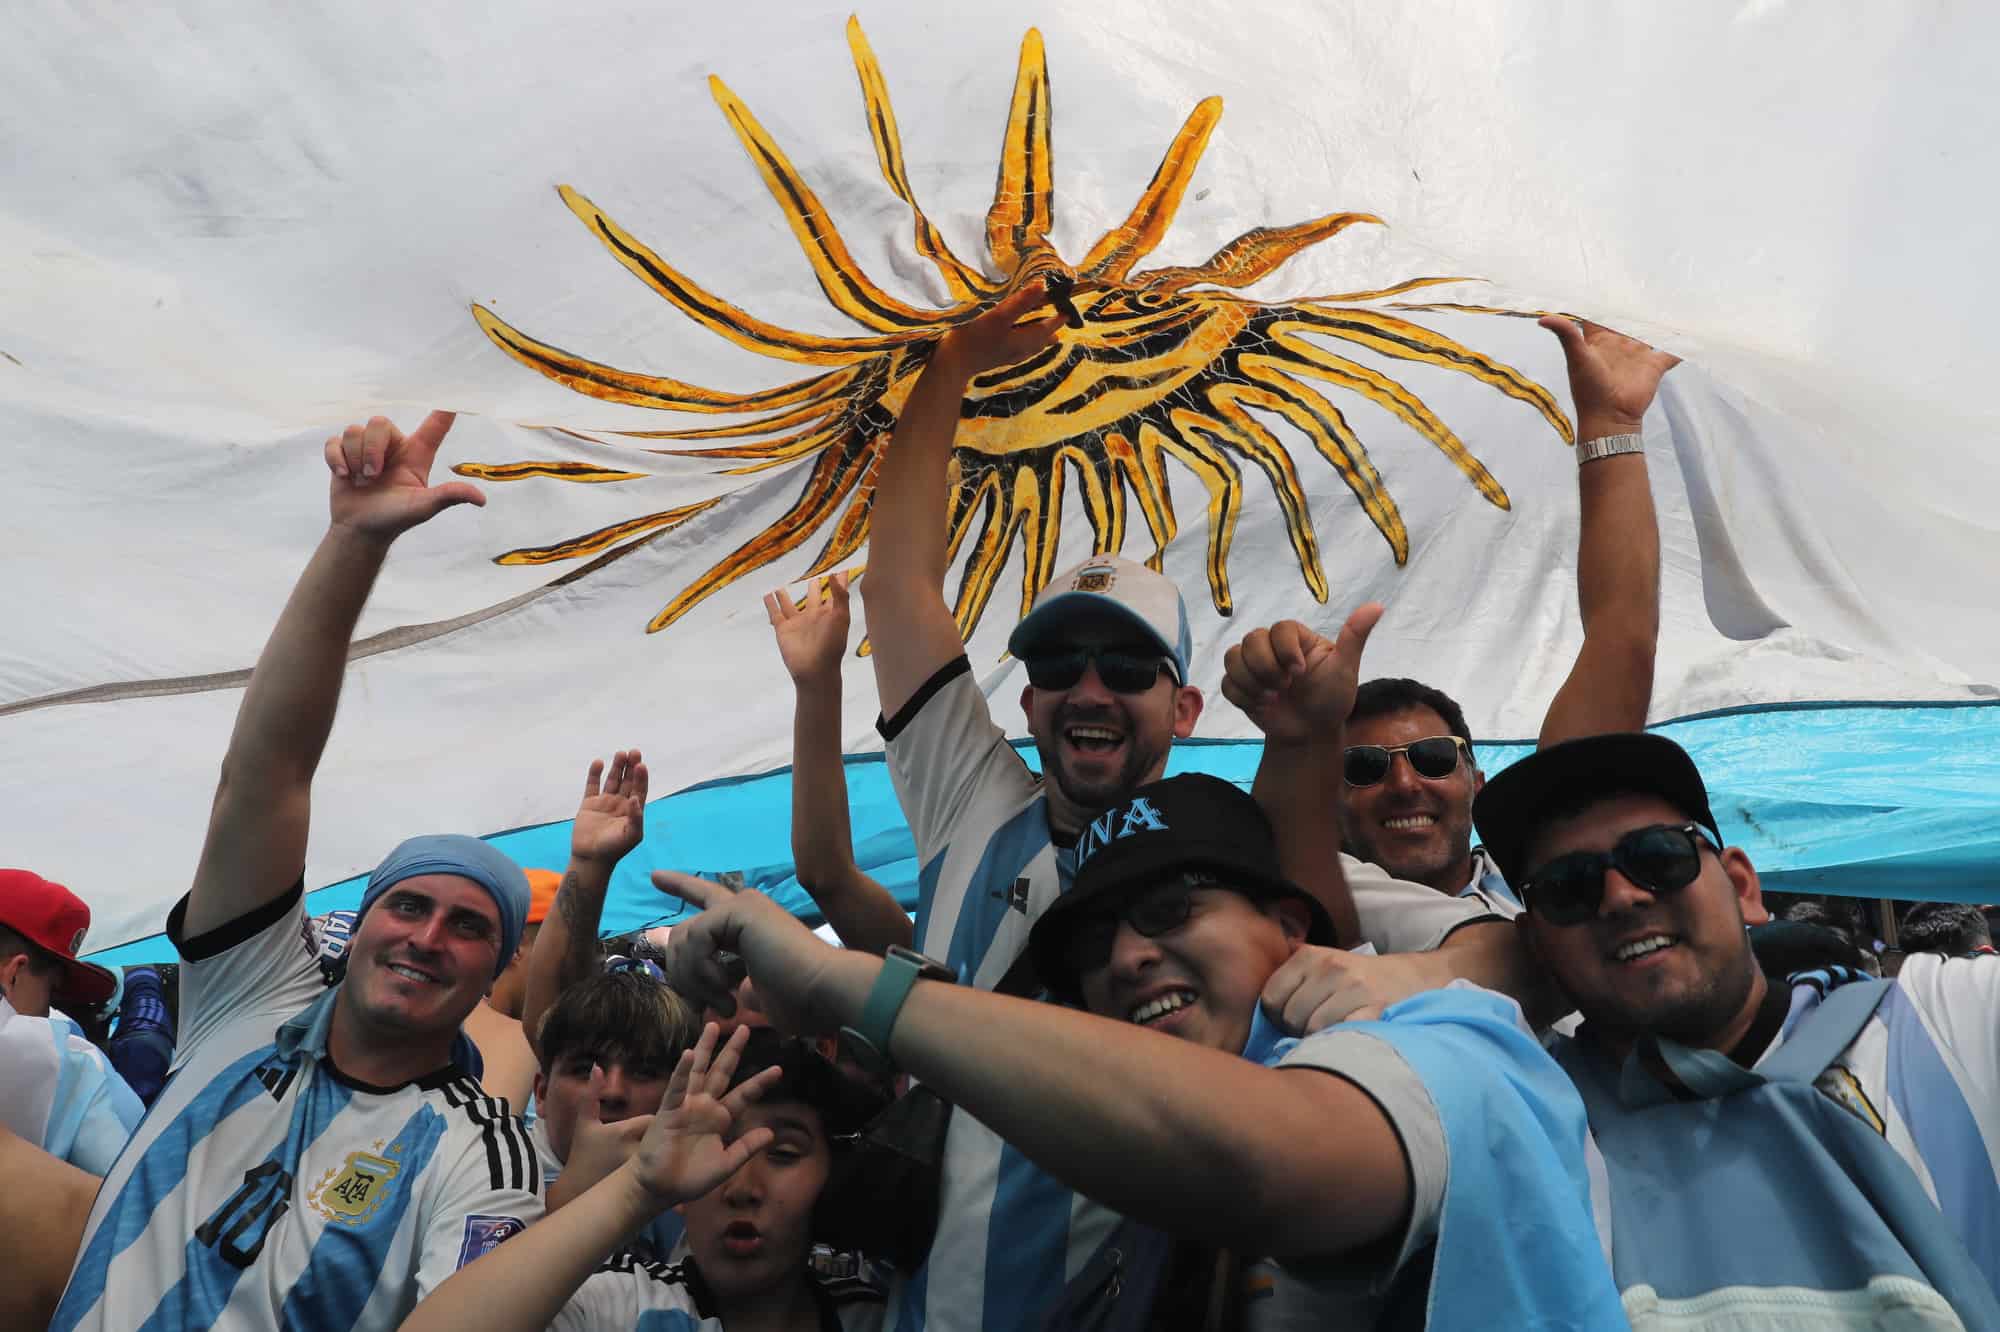 Hinchas de Argentina celebran hoy, la victoria de la selección argentina en el Mundial de Qatar 202, en los alrededores del Obelisco en Buenos Aires (Argentina). Argentina se proclamó campeona del mundo tras ganar en la tanda de penaltis (4-2) a Francia, después del empate 3-3 en los 120 minutos de juego.